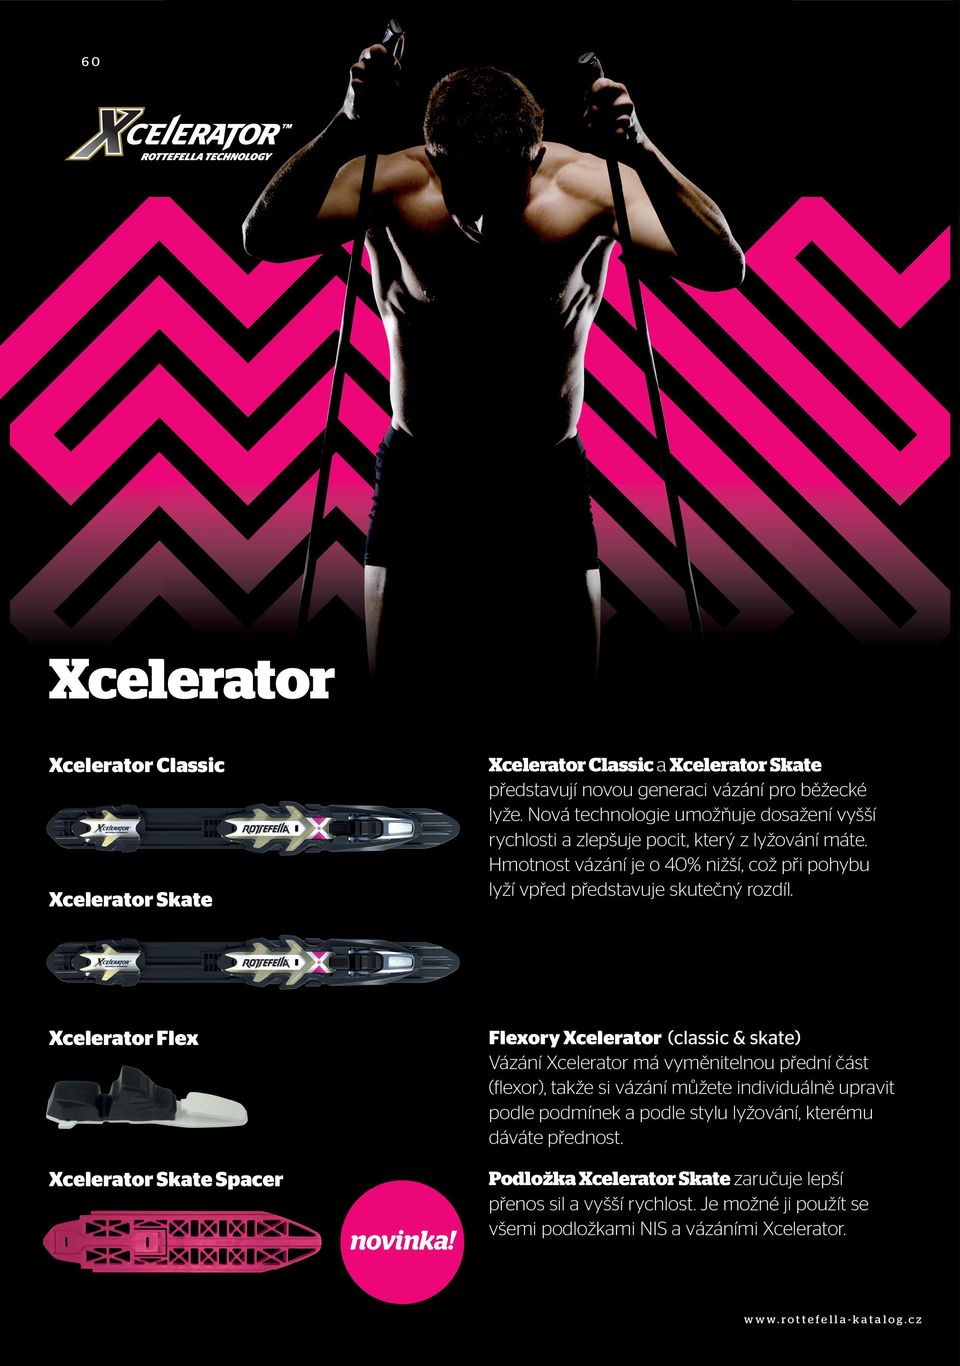 Xcelerator Skate Xcelerator Flex Flexory Xcelerator (classic & skate) Vázání Xcelerator má vyměnitelnou přední část (flexor), takže si vázání můžete individuálně upravit podle podmínek a